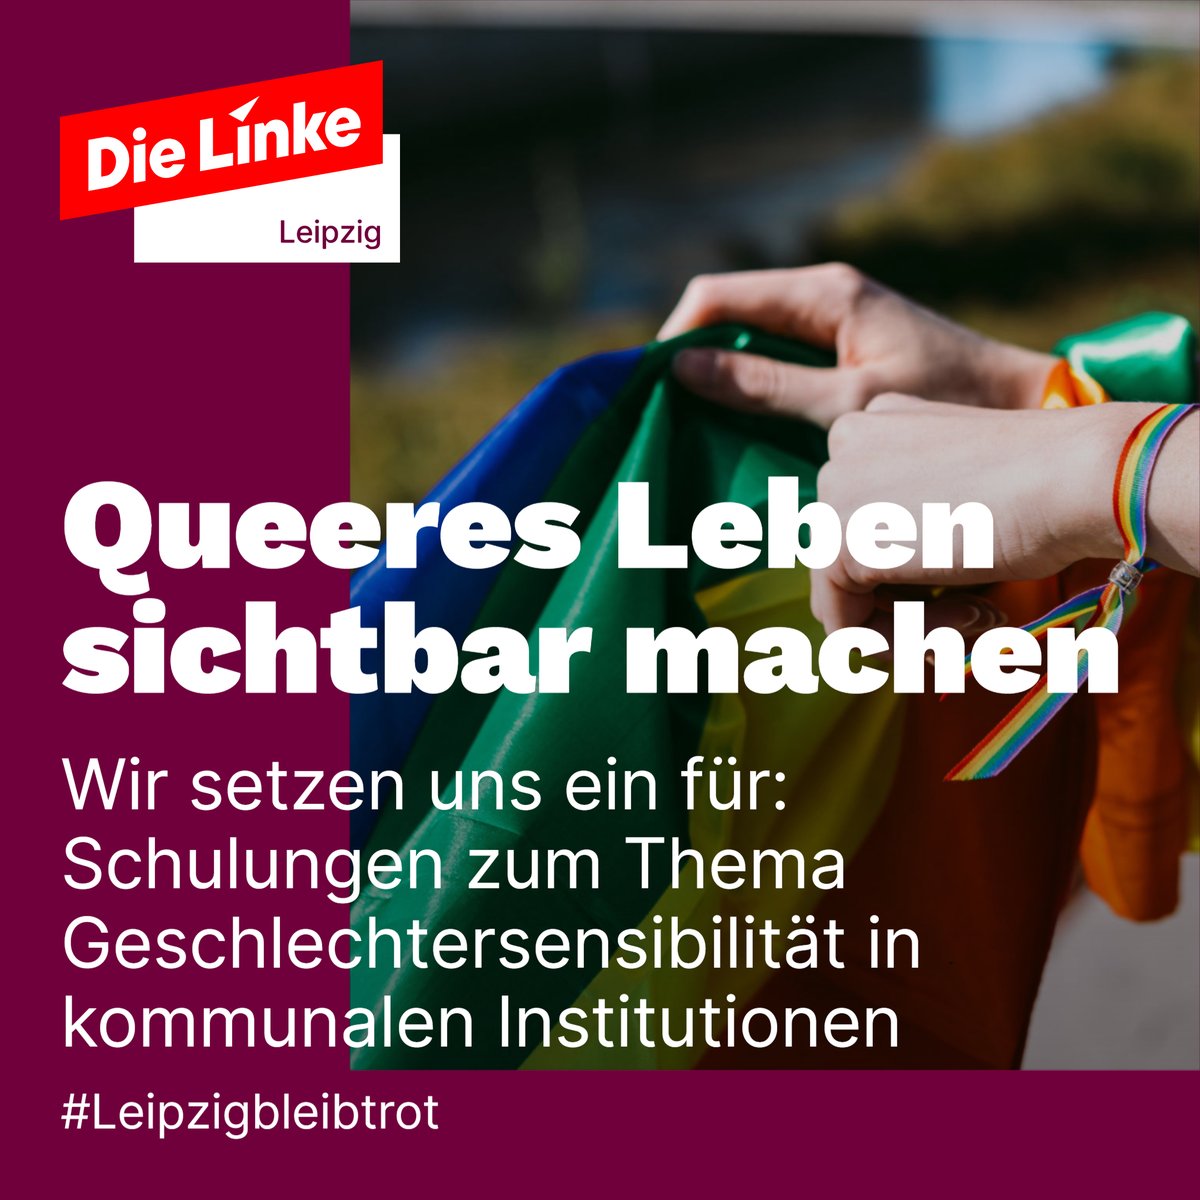 #Queer: Am 9. Juni ist in Leipzig Stadtratswahl. Wir arbeiten politisch dafür, die Überwindung jeglicher Diskriminierung von Menschen mit gleich- und mehrgeschlechtlicher sexueller Orientierung als Selbstverständlichkeit umzusetzen. 
#Leipzigbleibtrot #linkswirkt #srwle24